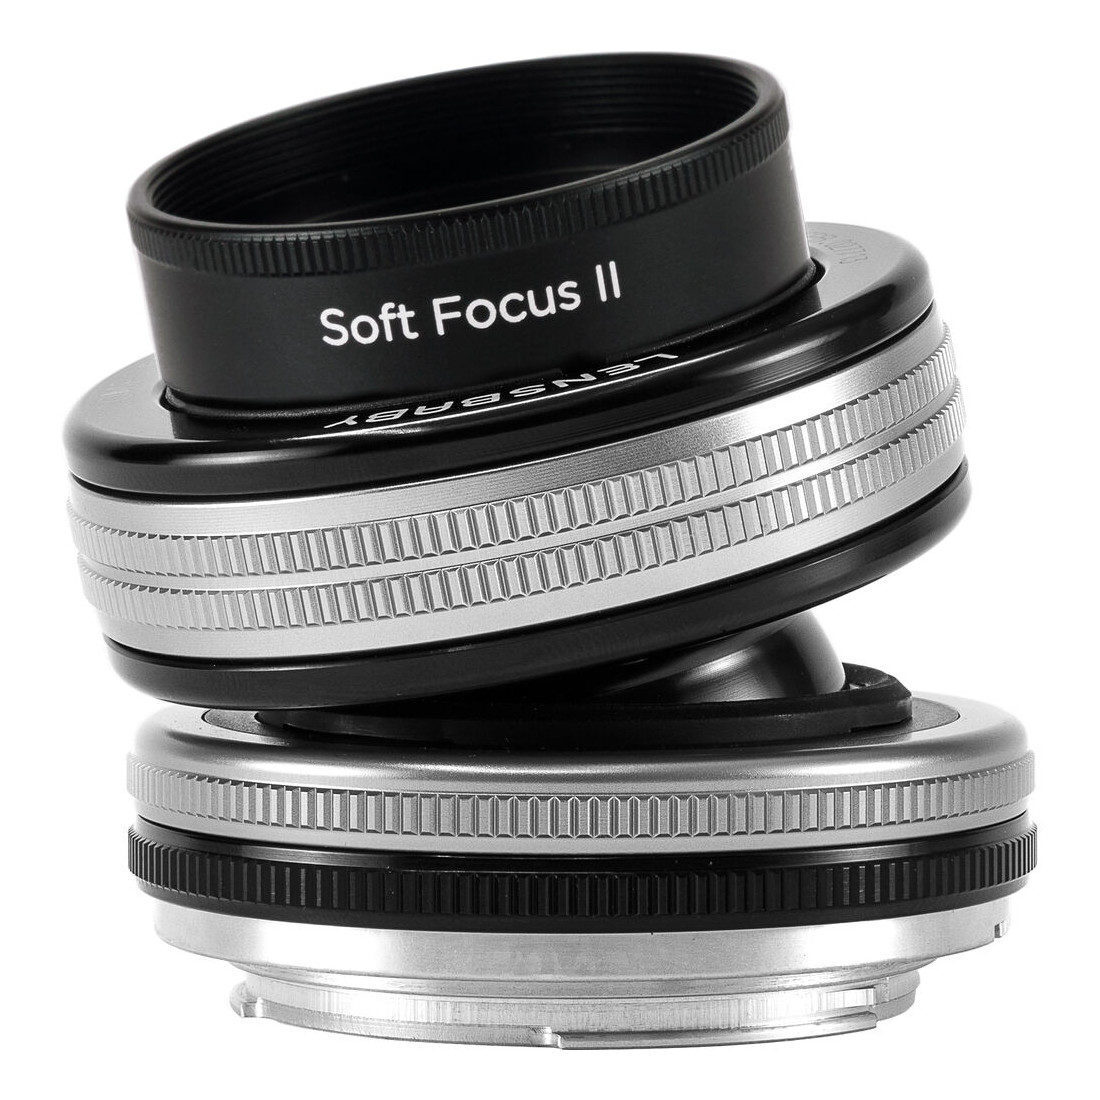 Lensbaby Composer Pro II met Soft Focus II MFT-mount objectief